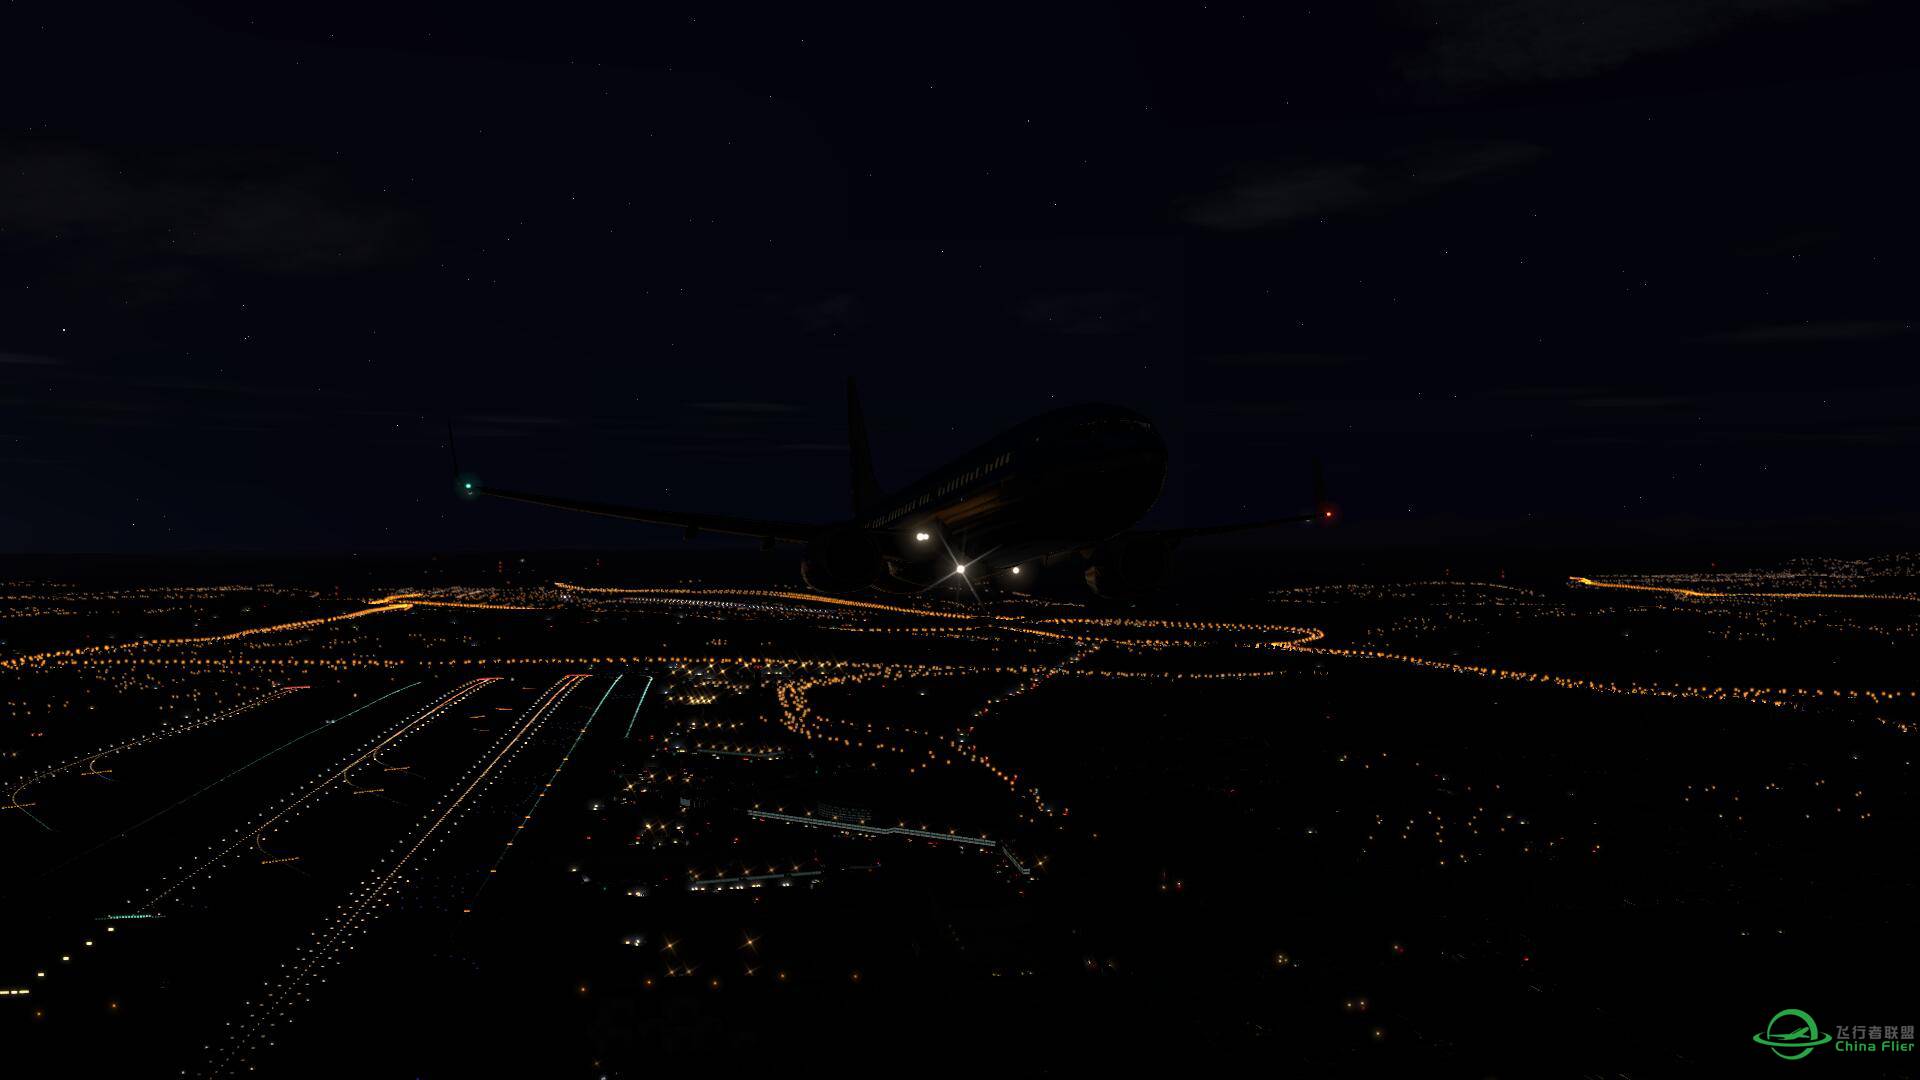 X-plane 11 beta 上手图 含夜景+黄昏-987 